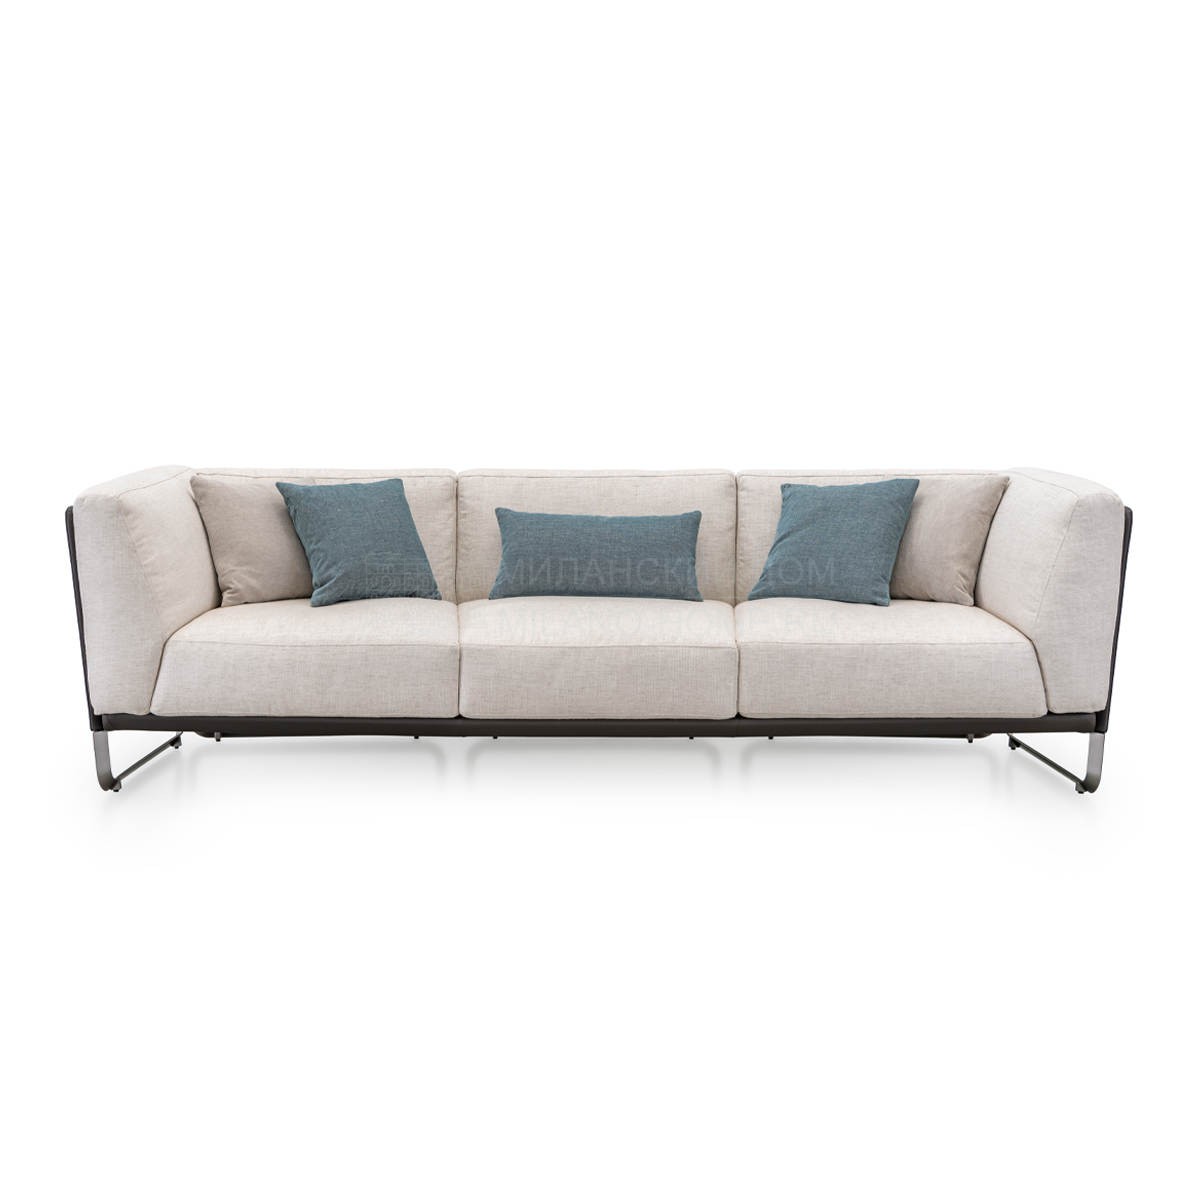 Прямой диван Milano sofa из Италии фабрики TURRI